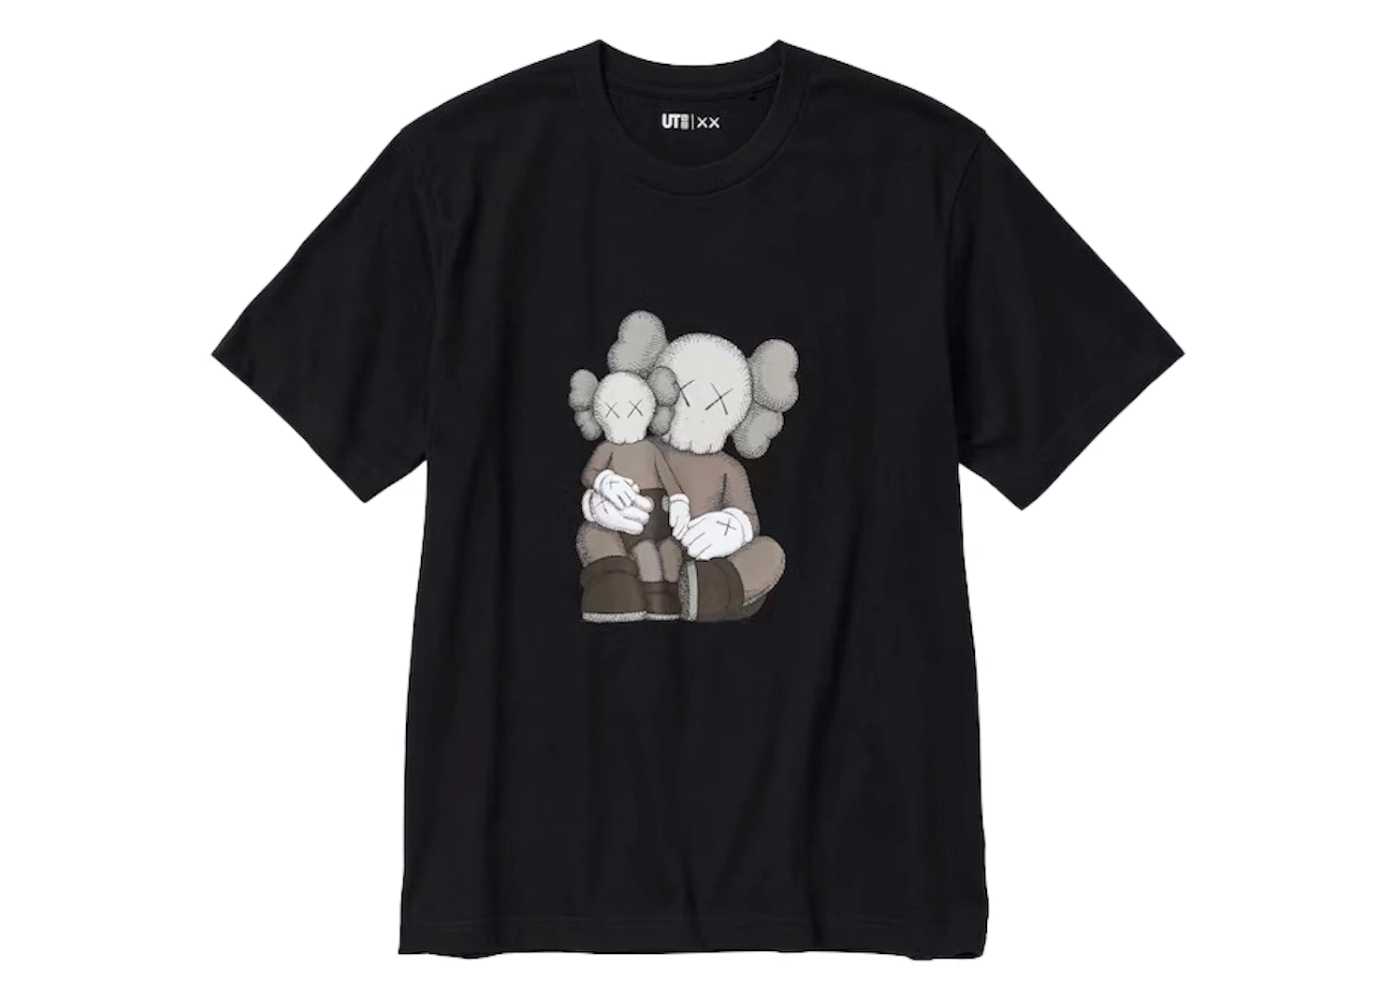 KAWS x Uniqlo UT Short Sleeve Graphic T-shirt (US Sizing) Black